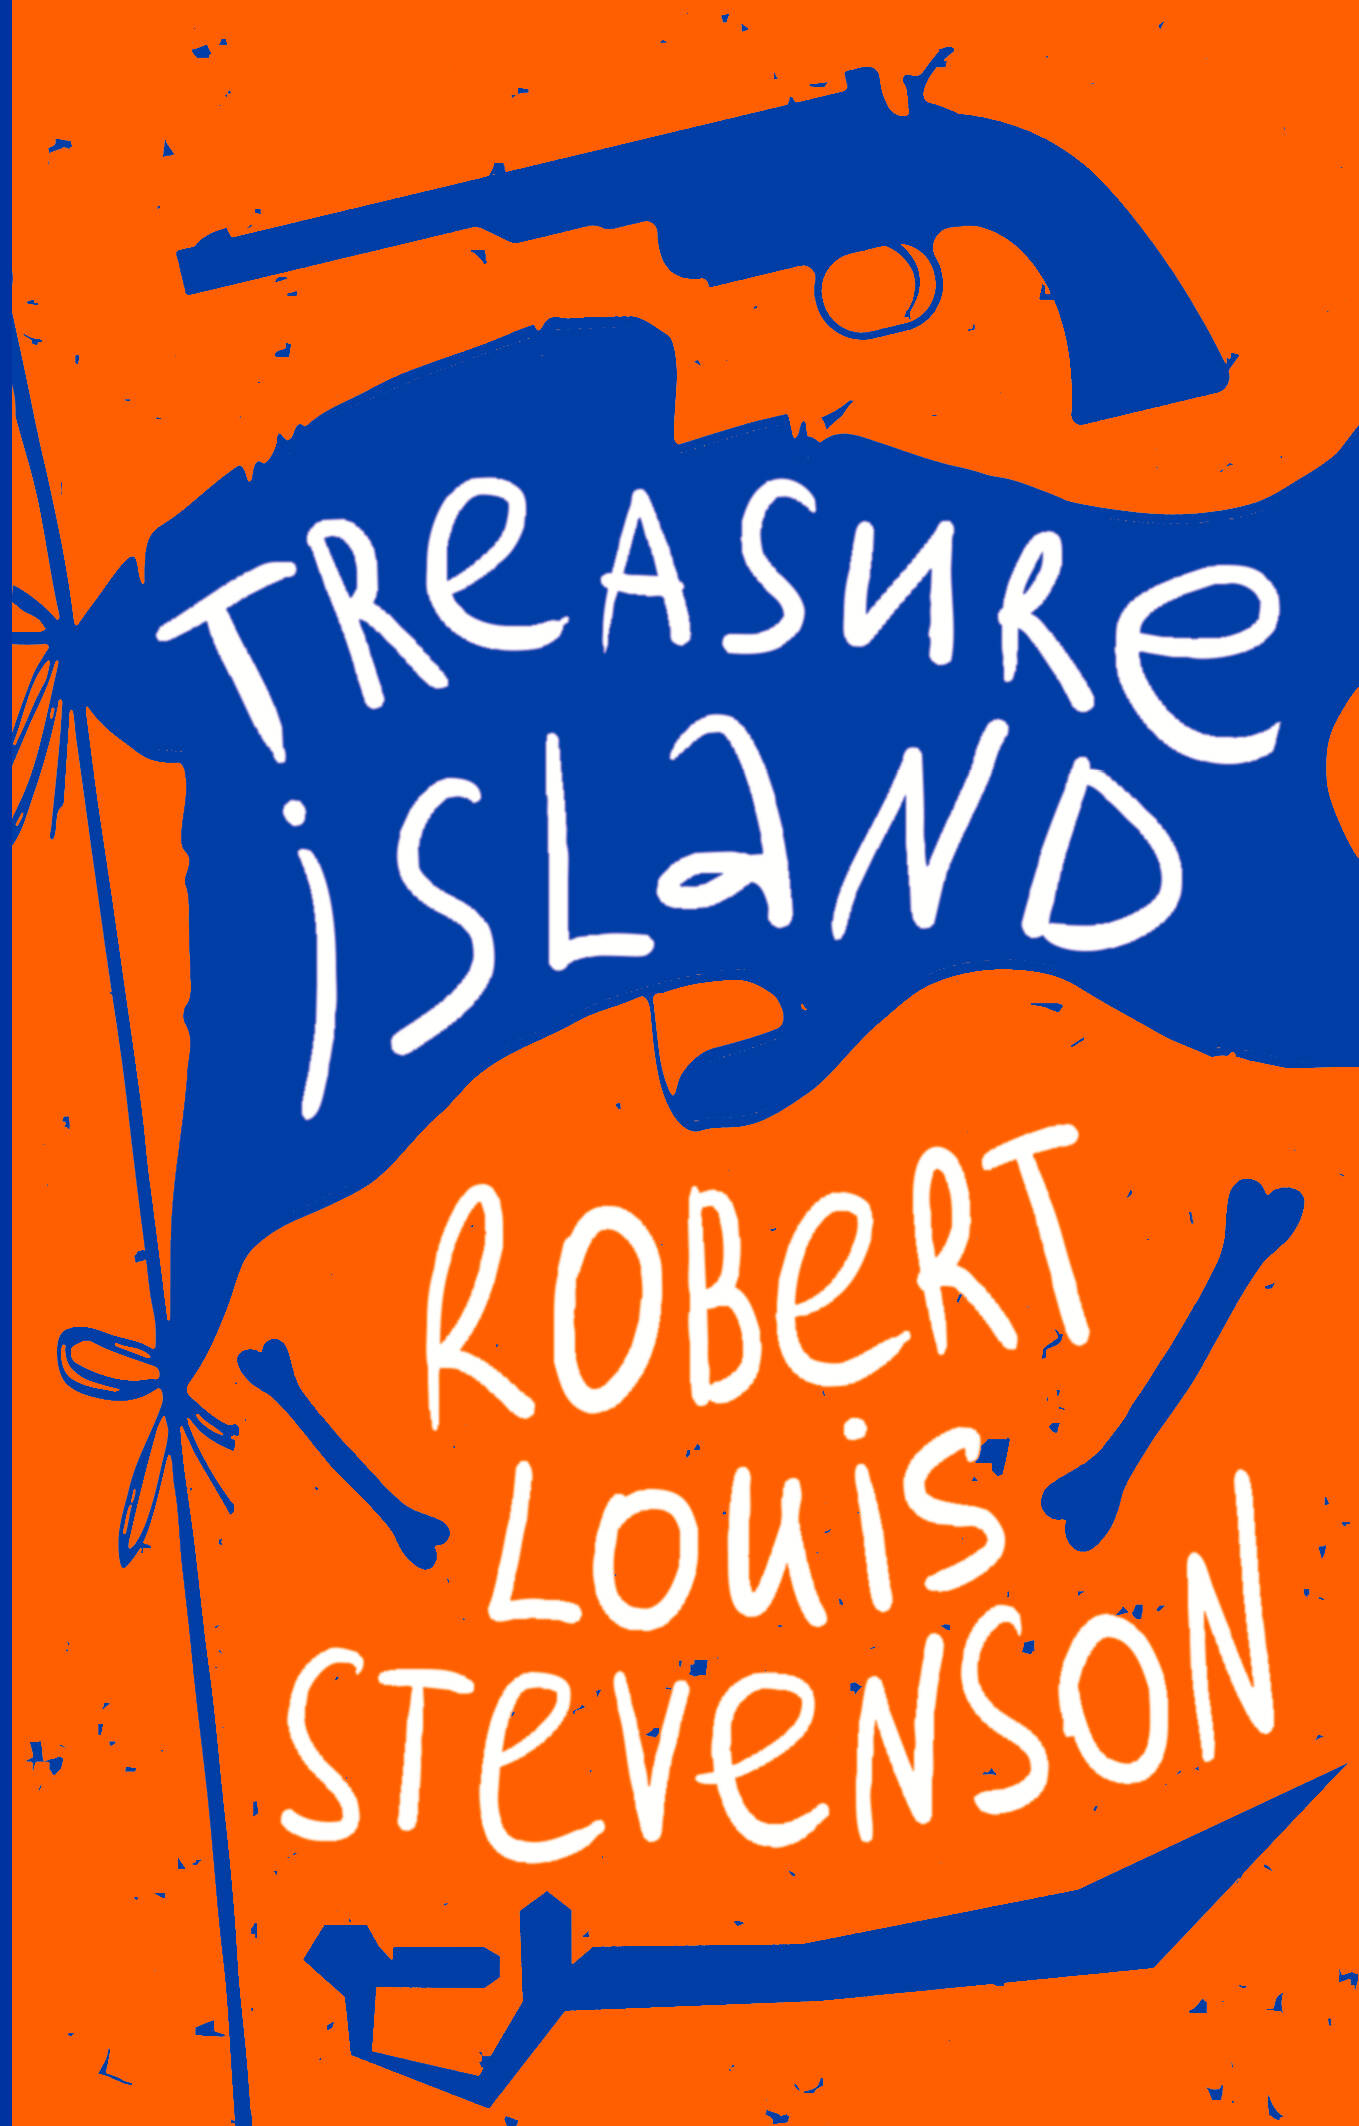 Стивенсон Роберт Льюис Balfour Treasure Island стивенсон роберт льюис balfour treasure island